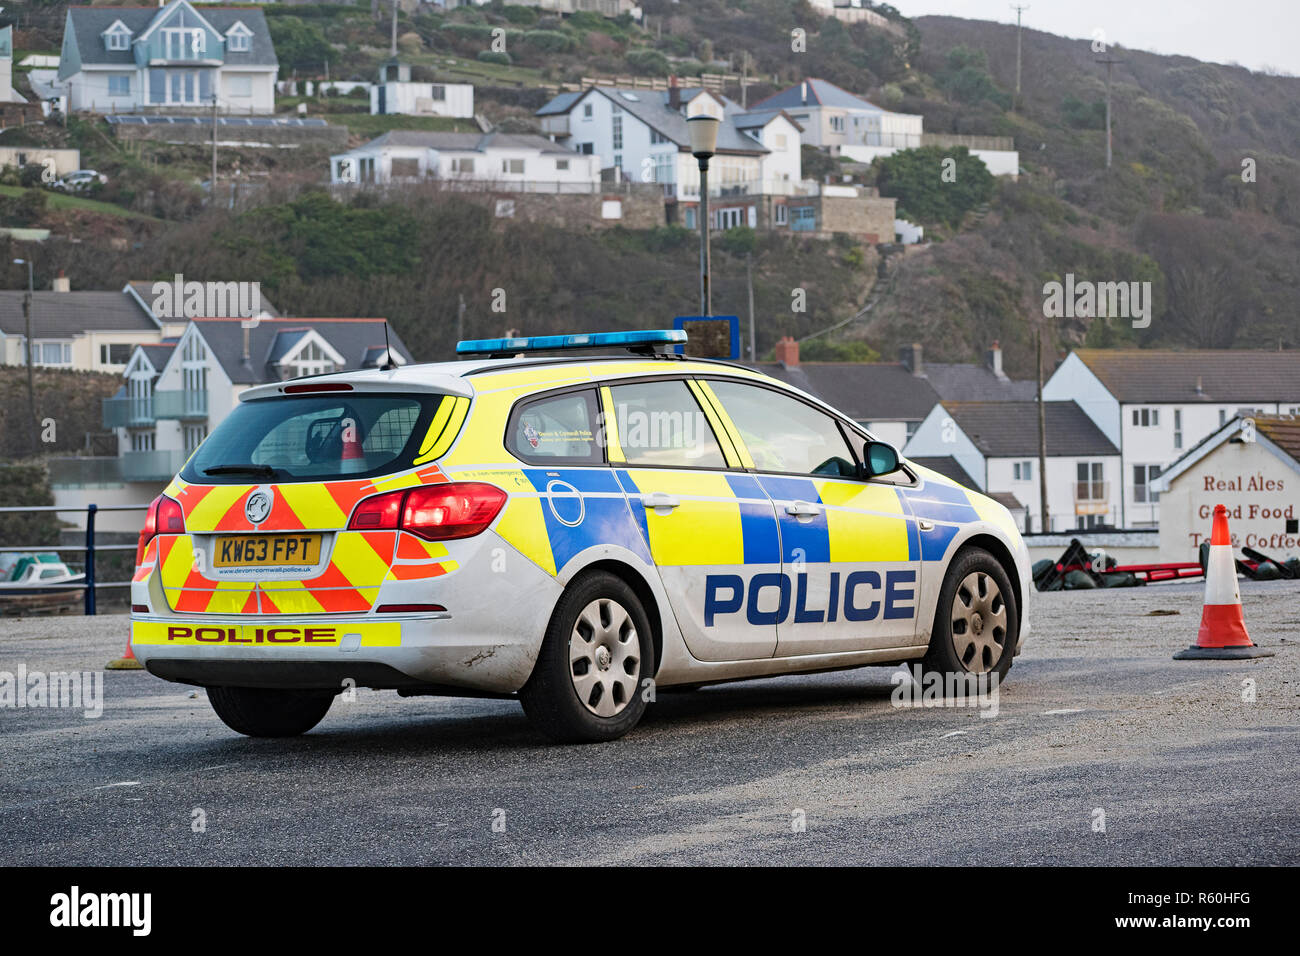 Voiture de police participant à un incident survenu à Portreath à Cornwall, Angleterre, Royaume-Uni. Banque D'Images